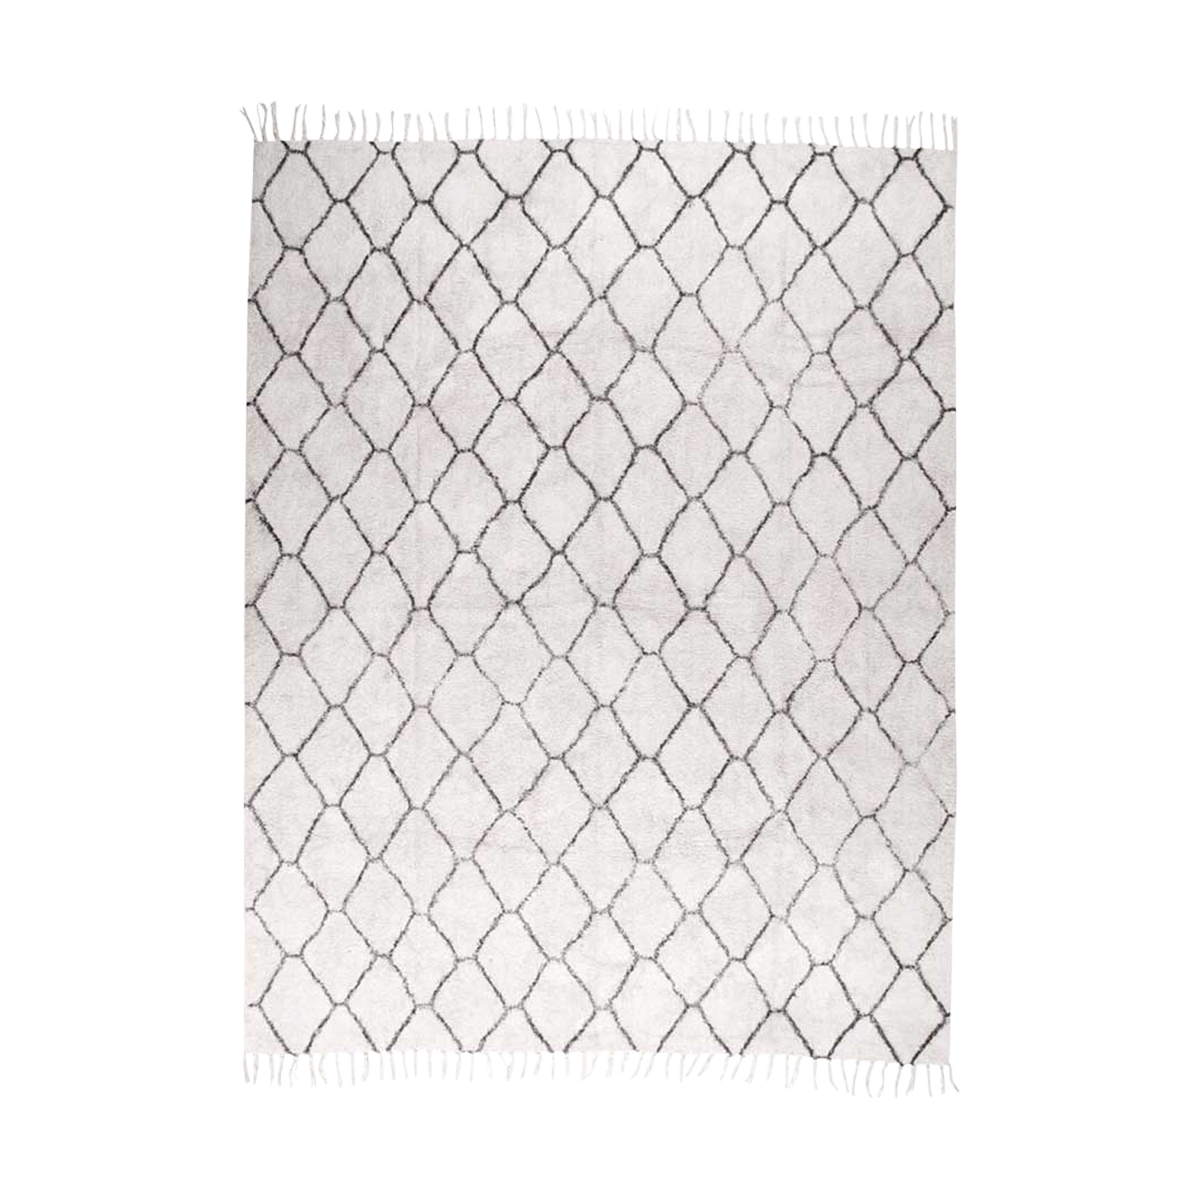 Jeannet vloerkleed gebroken wit - 240 x 180 cm